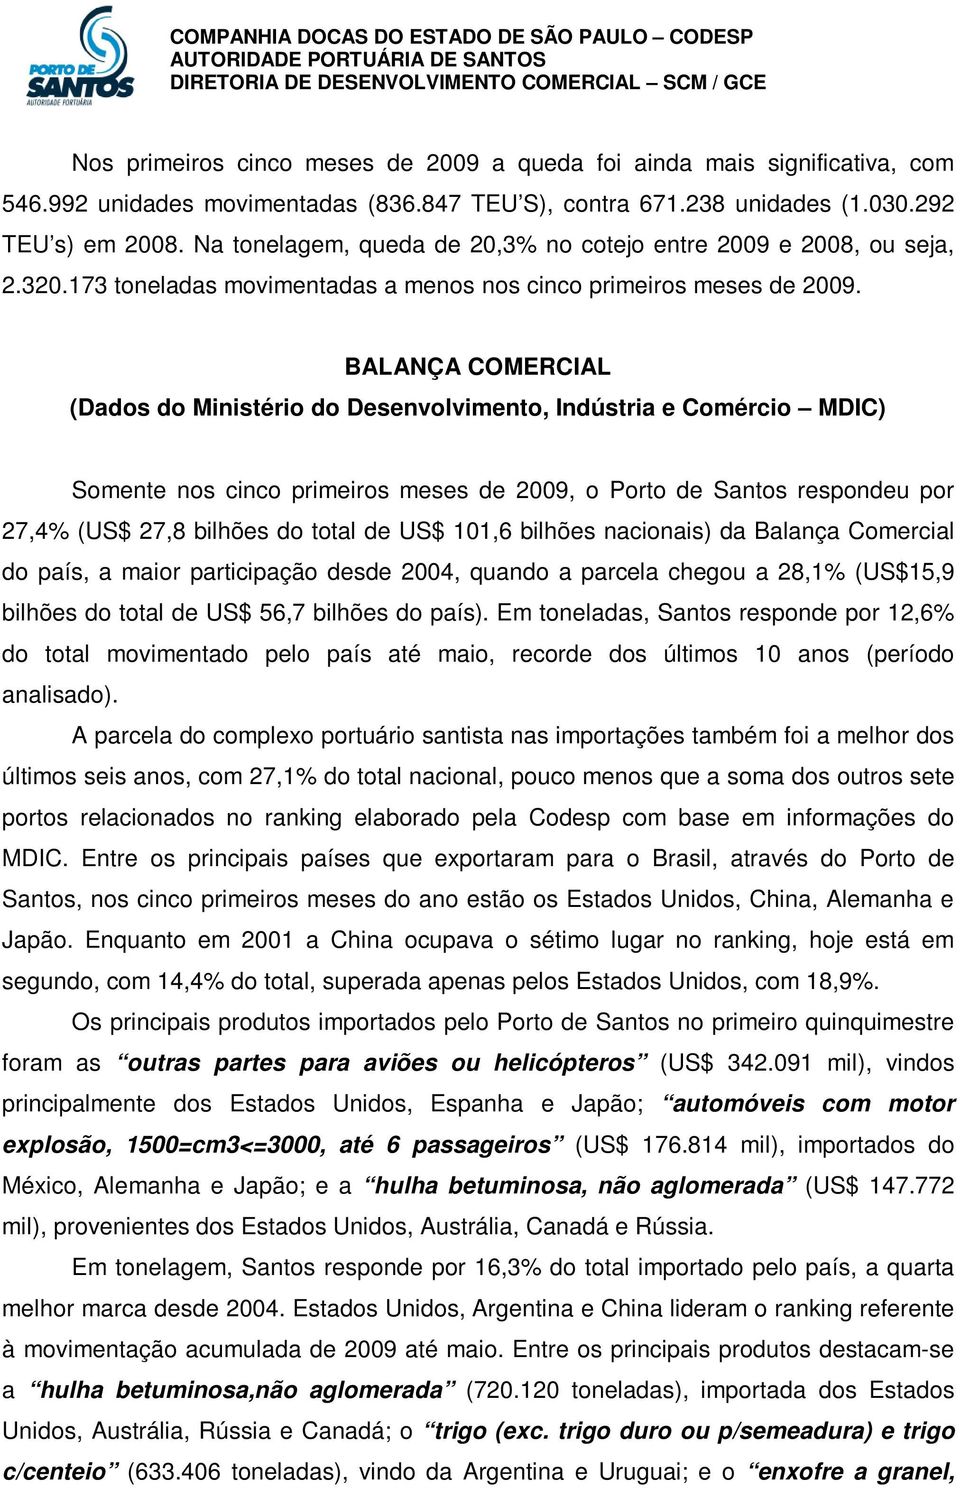 BALANÇA COMERCIAL (Dados do Ministério do Desenvolvimento, Indústria e Comércio MDIC) Somente nos cinco primeiros meses de 2009, o Porto de Santos respondeu por 27,4% (US$ 27,8 bilhões do total de